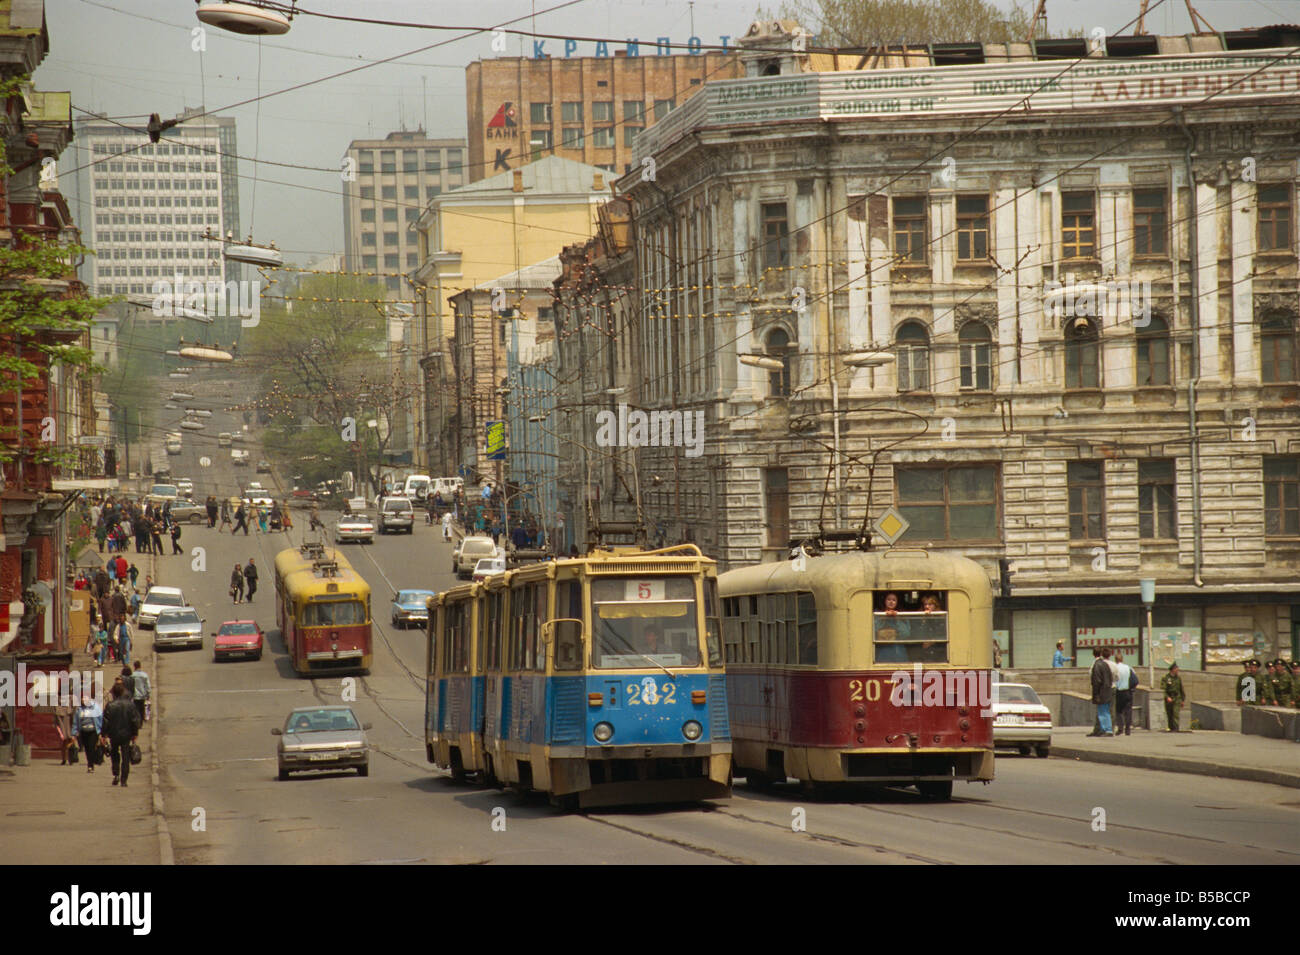 Le tramway dans la rue Vladivostok Extrême-Orient russe russie Europe Banque D'Images